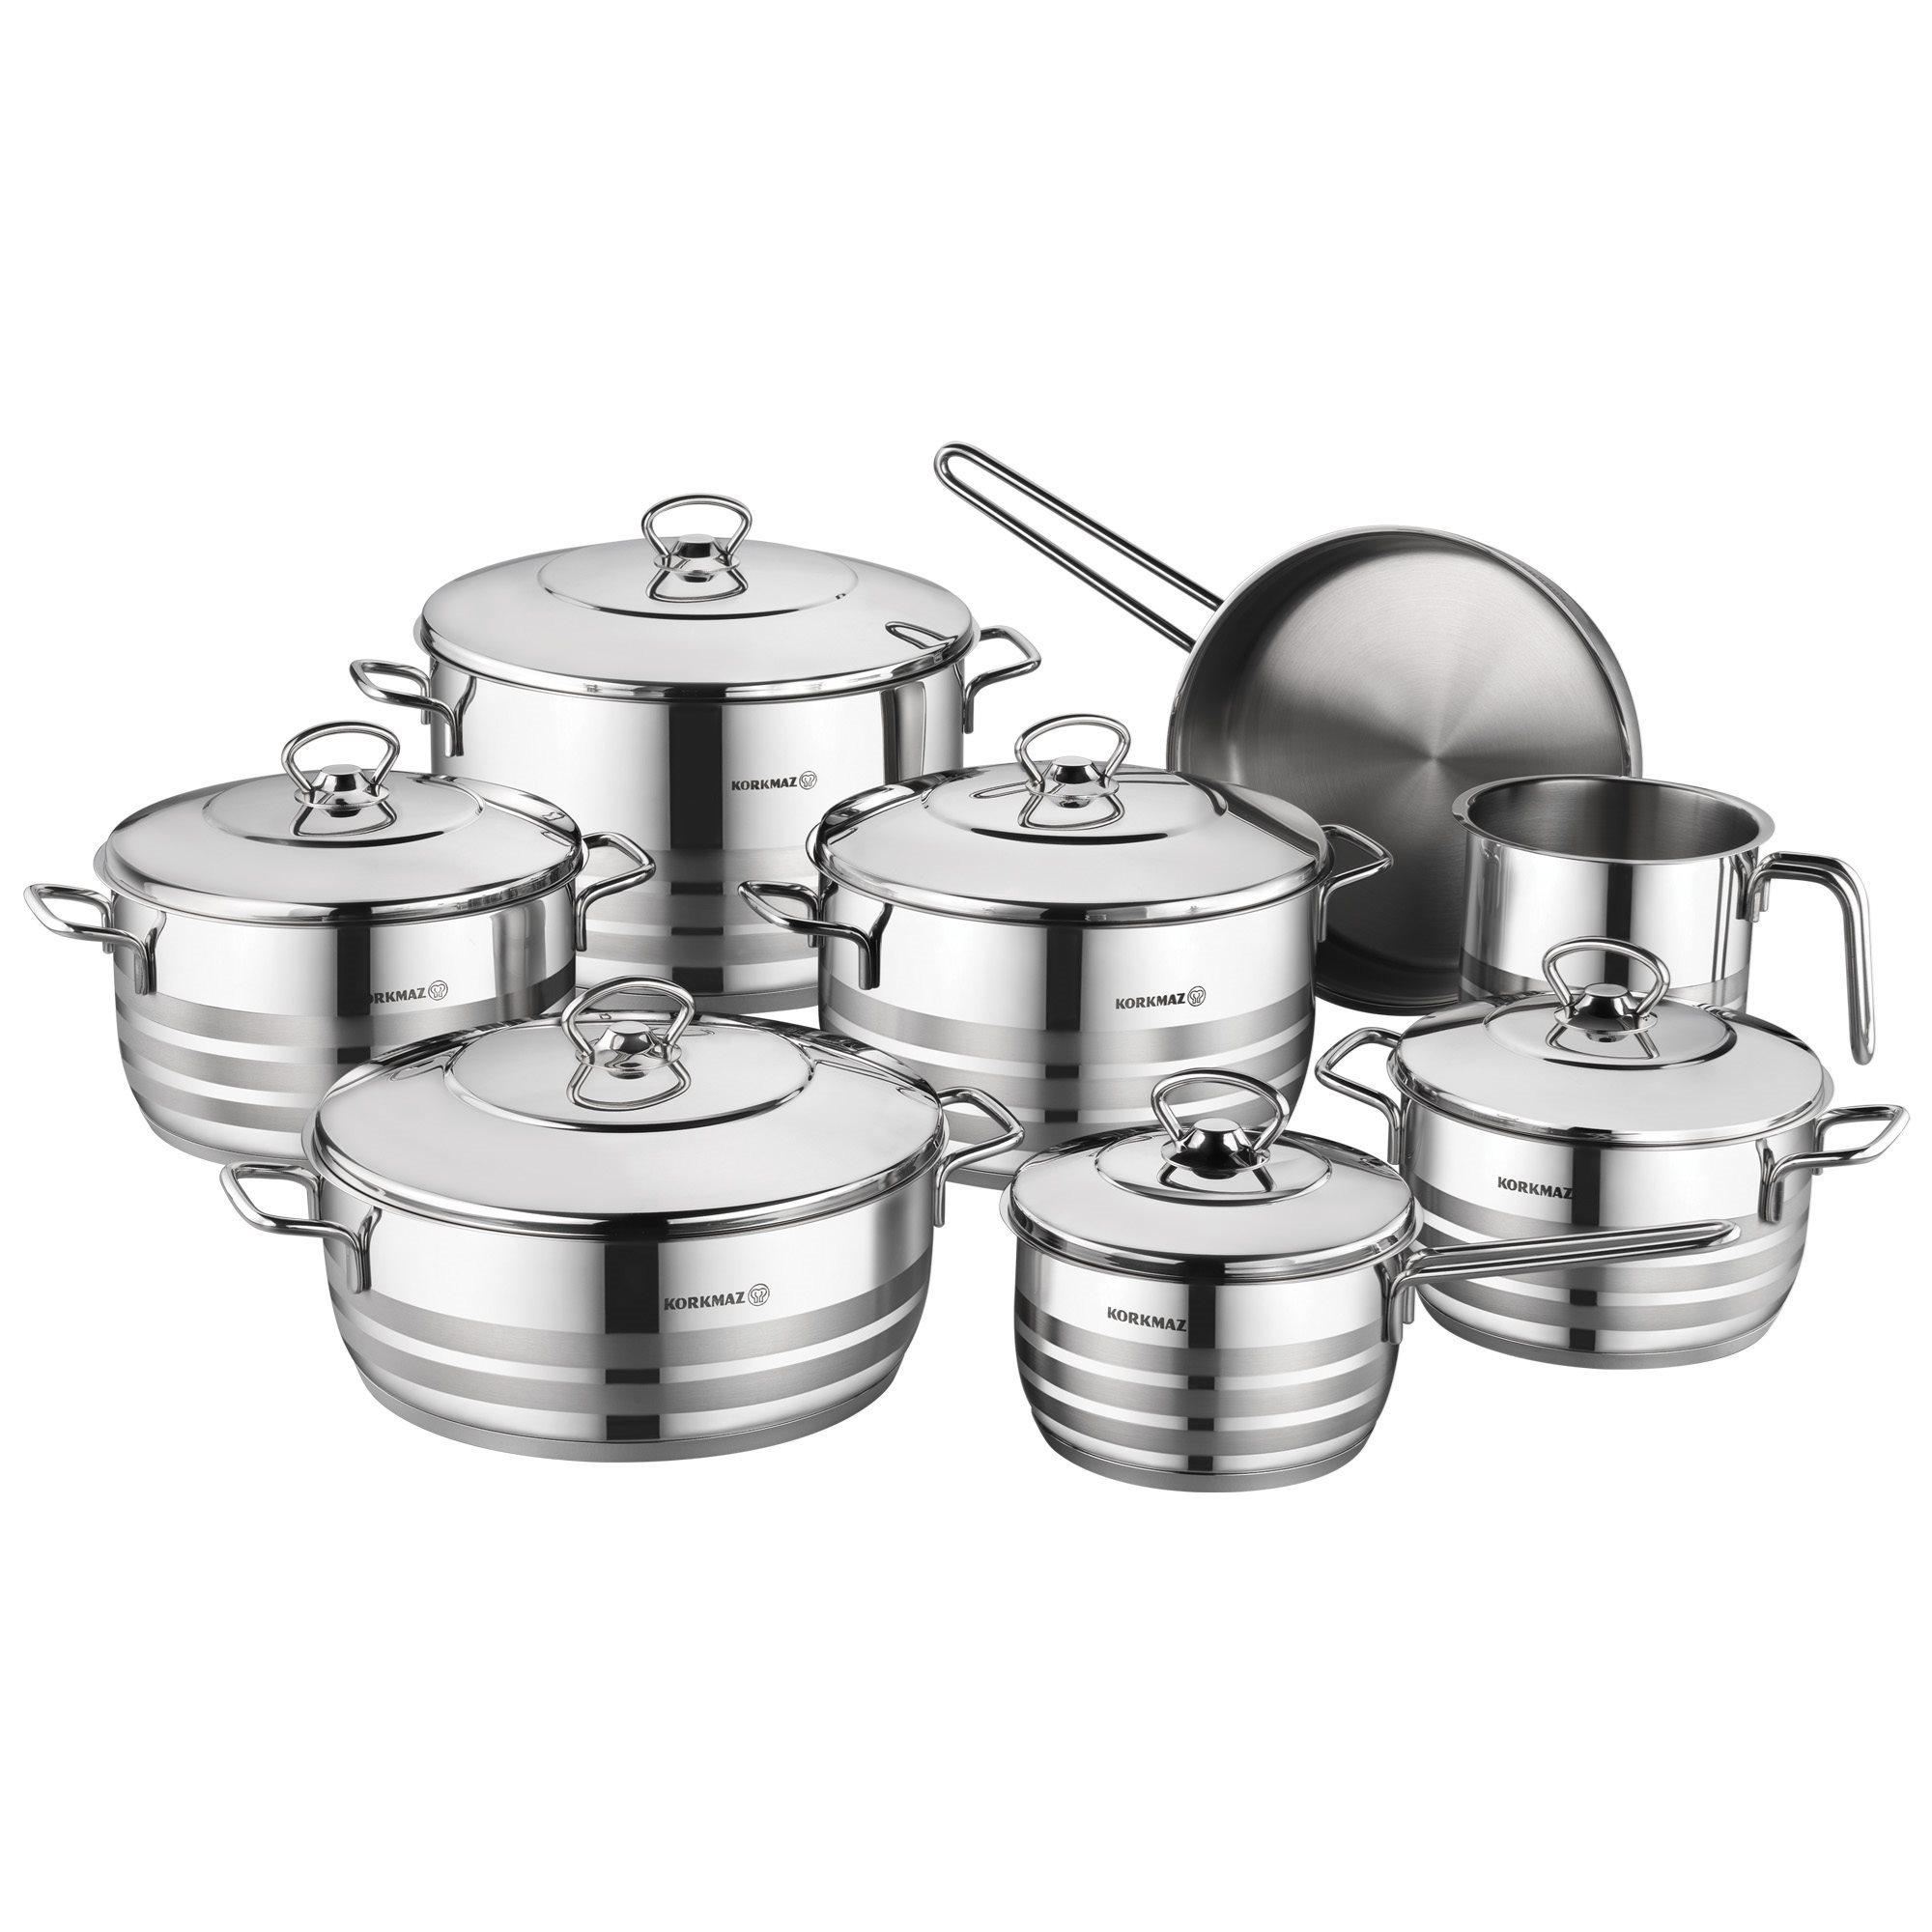 Korkmaz 2 - Piece Non-Stick Stainless Steel (18/10) Cookware Set